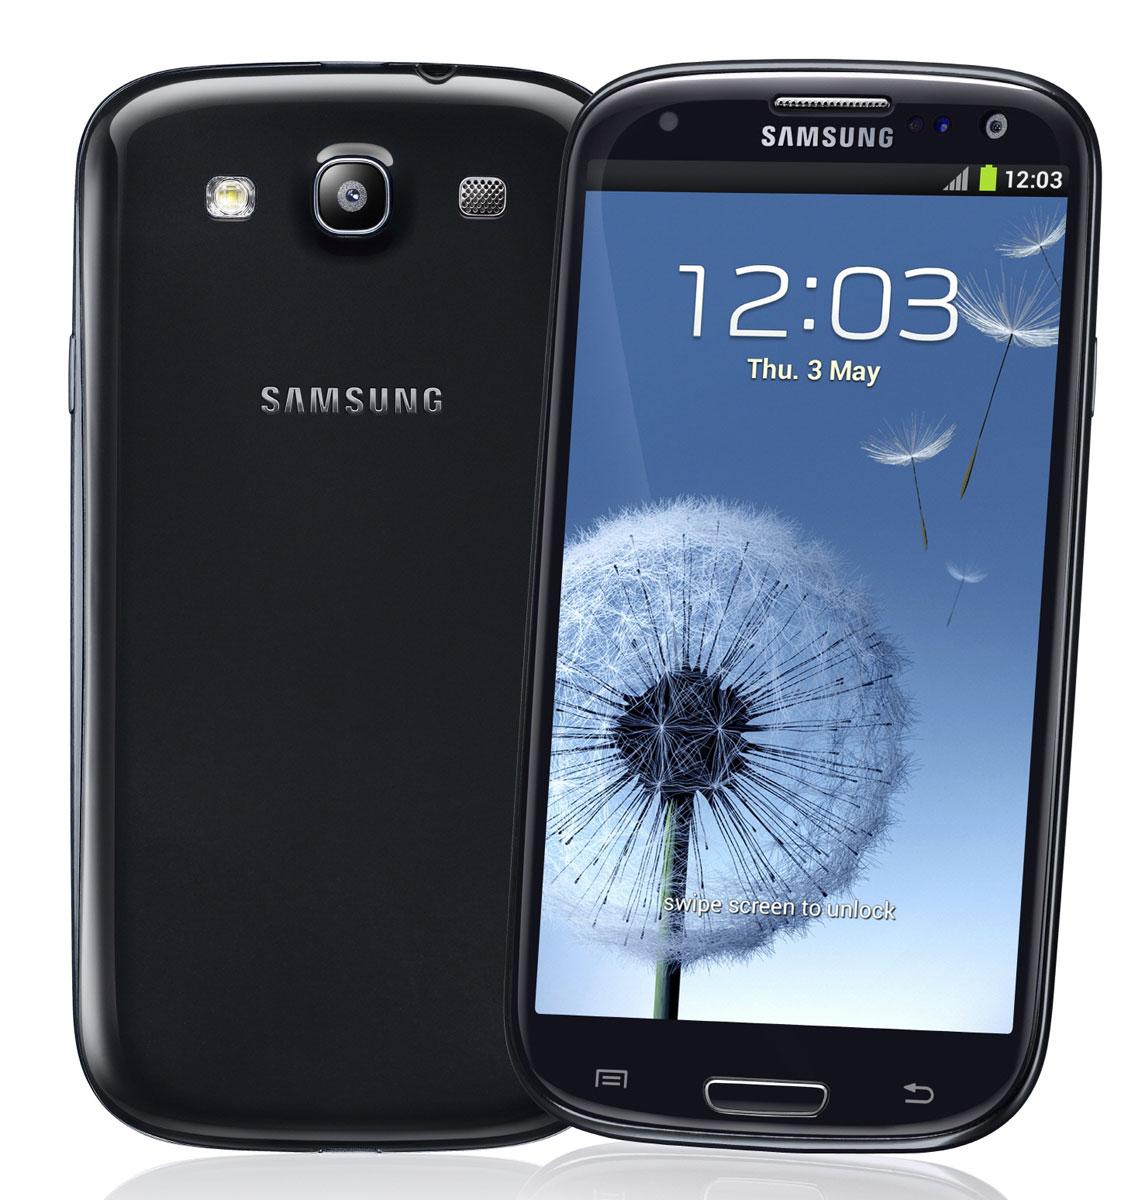 Samsung Galaxy S3 de color negro, vista frontal